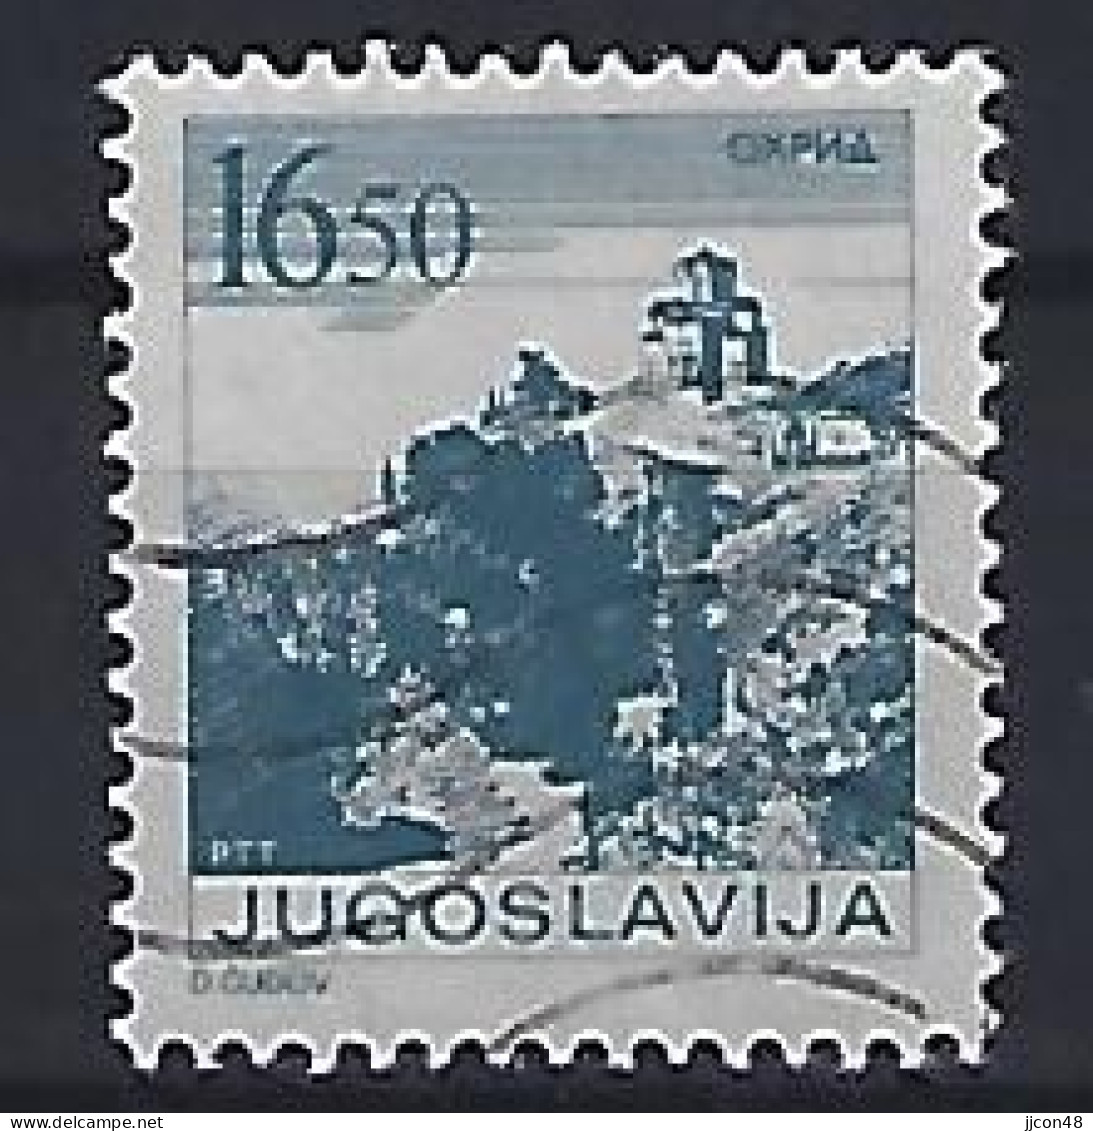 Jugoslavia 1983  Sehenswurdigkeiten (o) Mi.1995 A - Usados